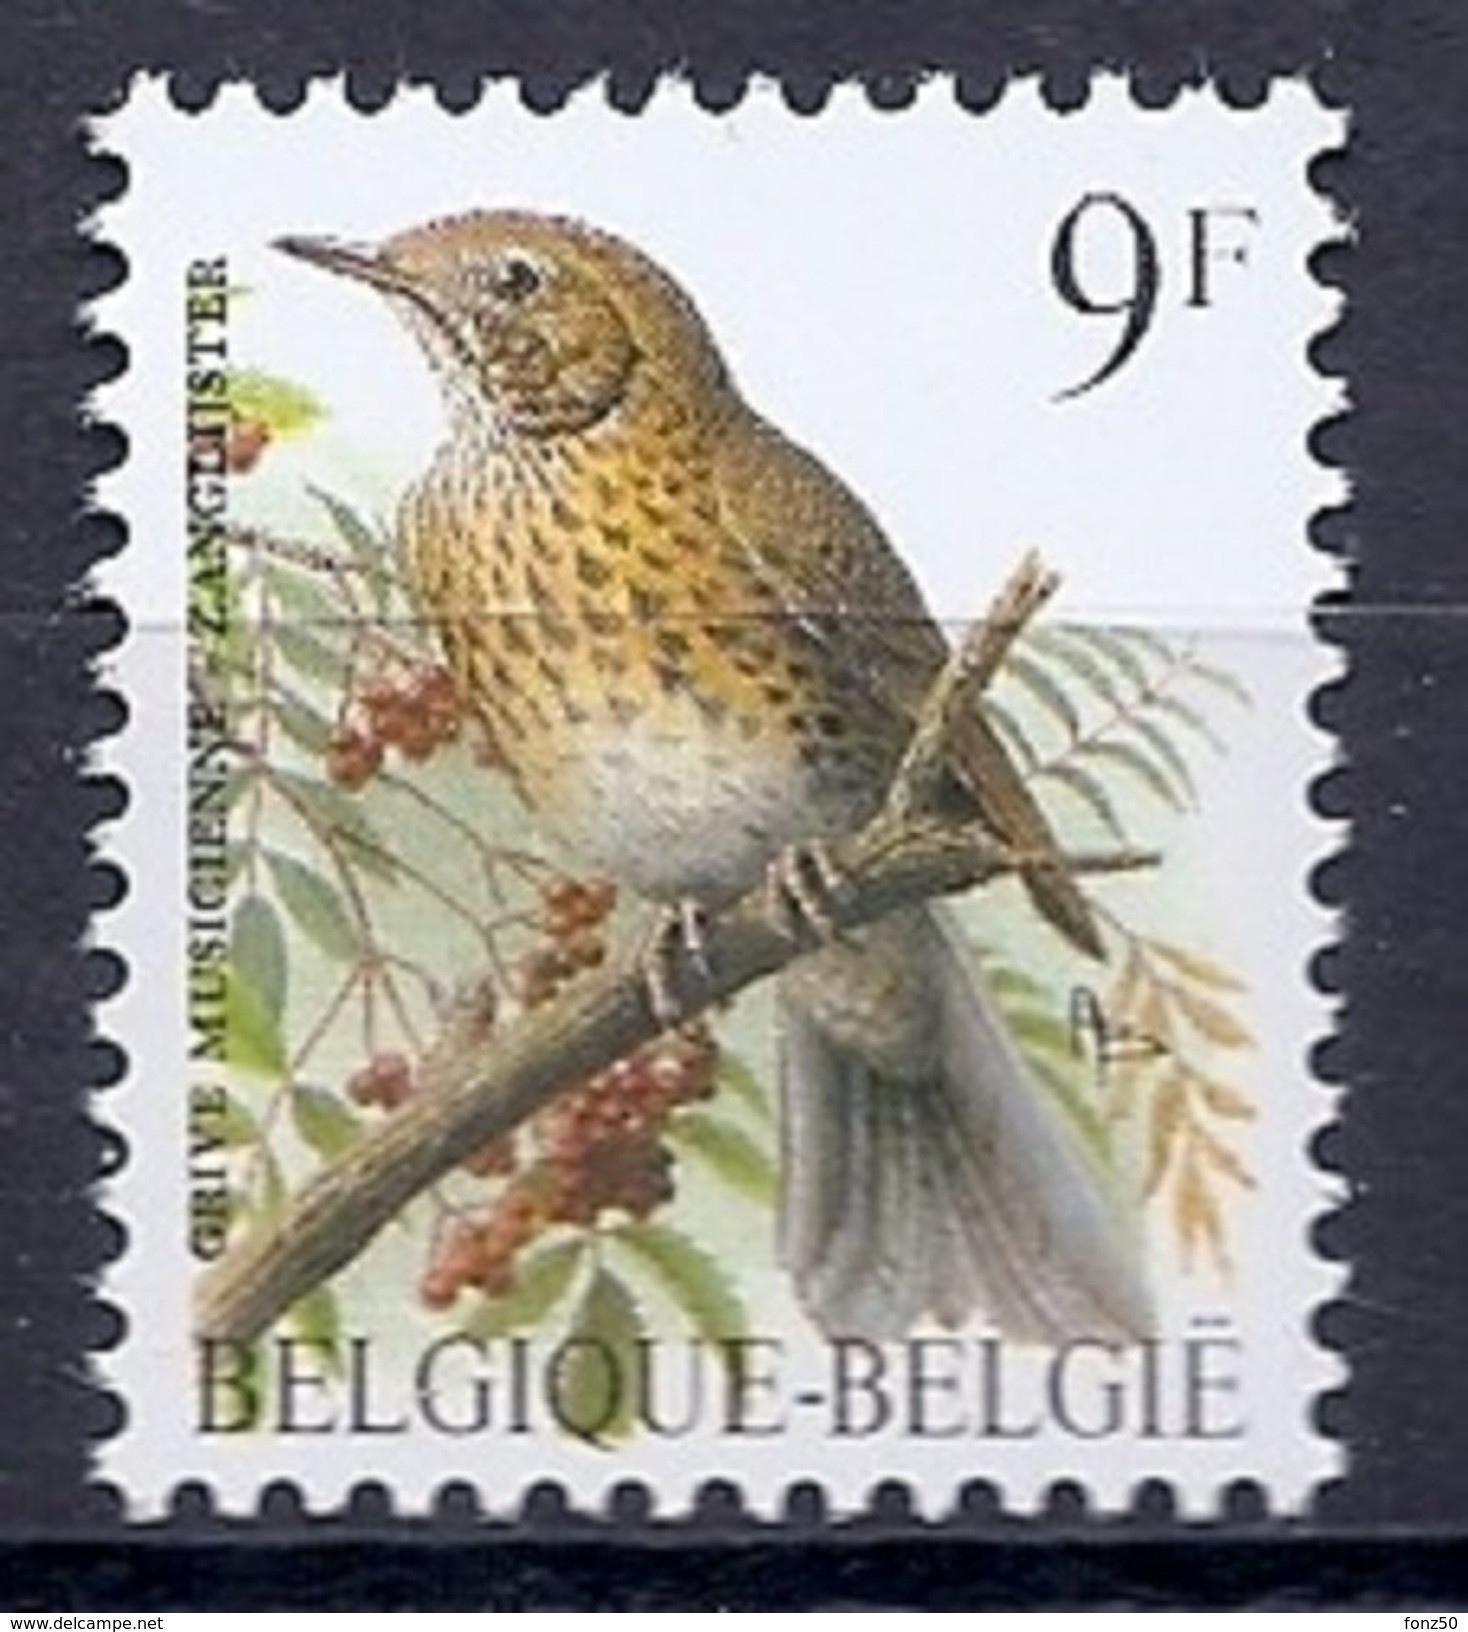 BELGIE * Buzin * Nr 2426 * Postfris Xx * FLUOR  PAPIER - 1985-.. Oiseaux (Buzin)